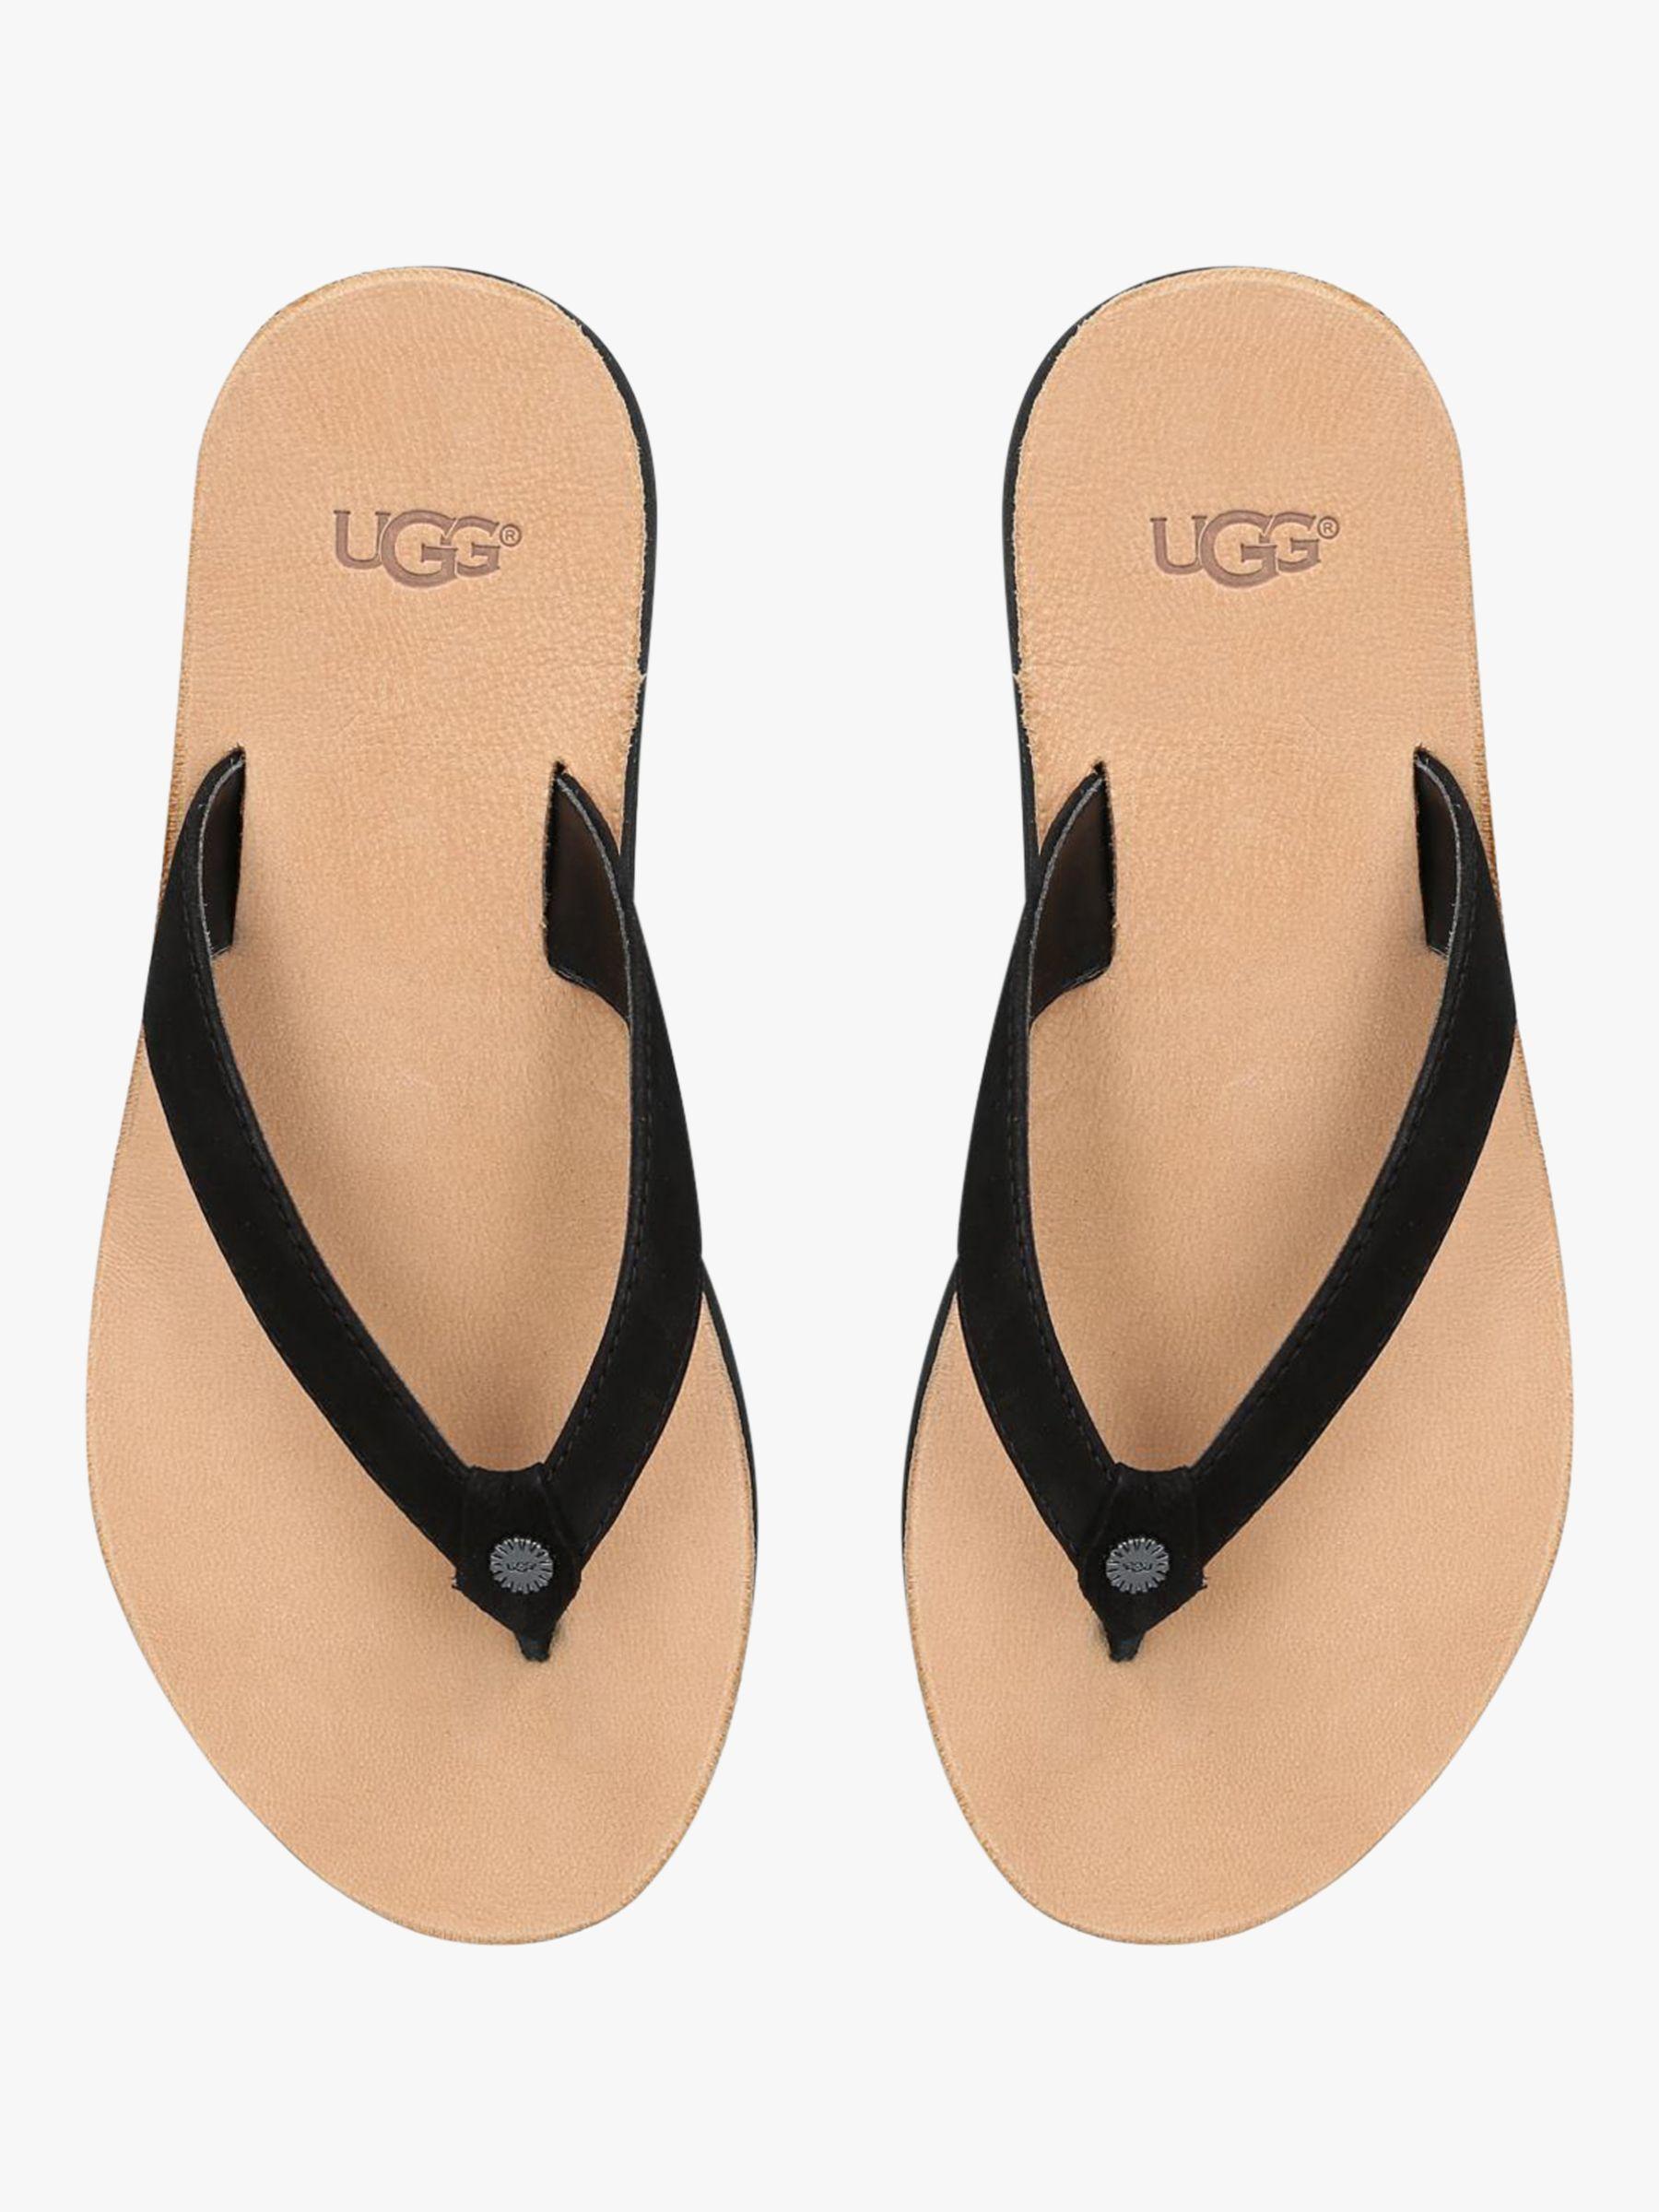 UGG Leather Tawney Flip Flops in Black Leather (Black) - Save 40% | Lyst UK